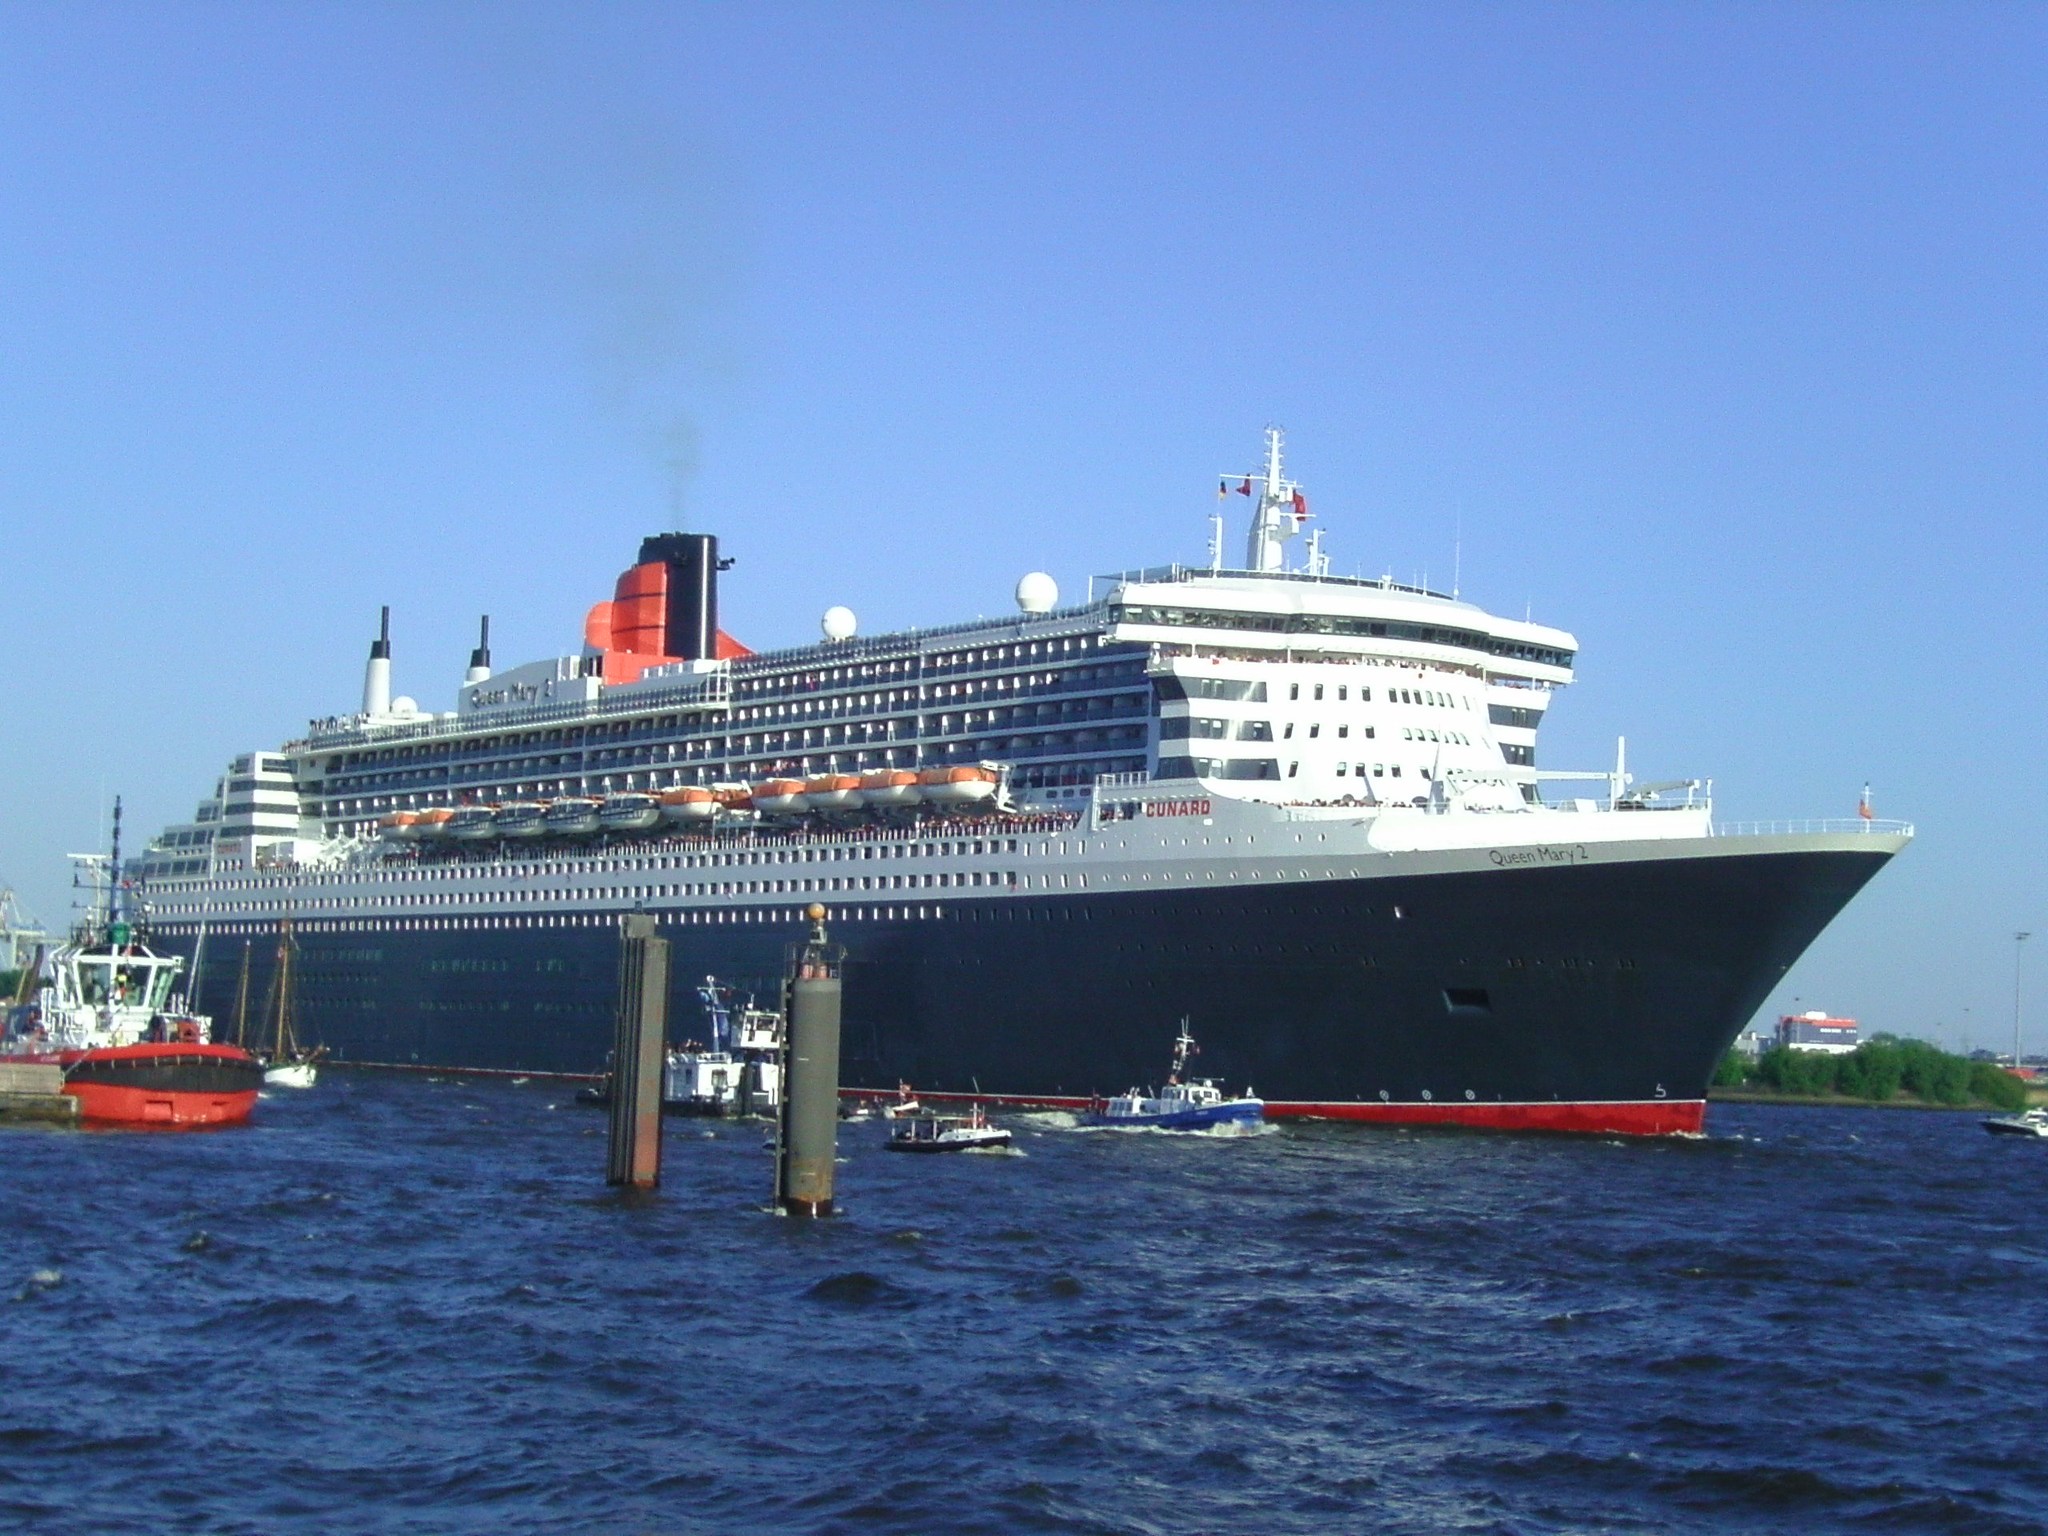 Ship Queen Mary 2011 05 08 1